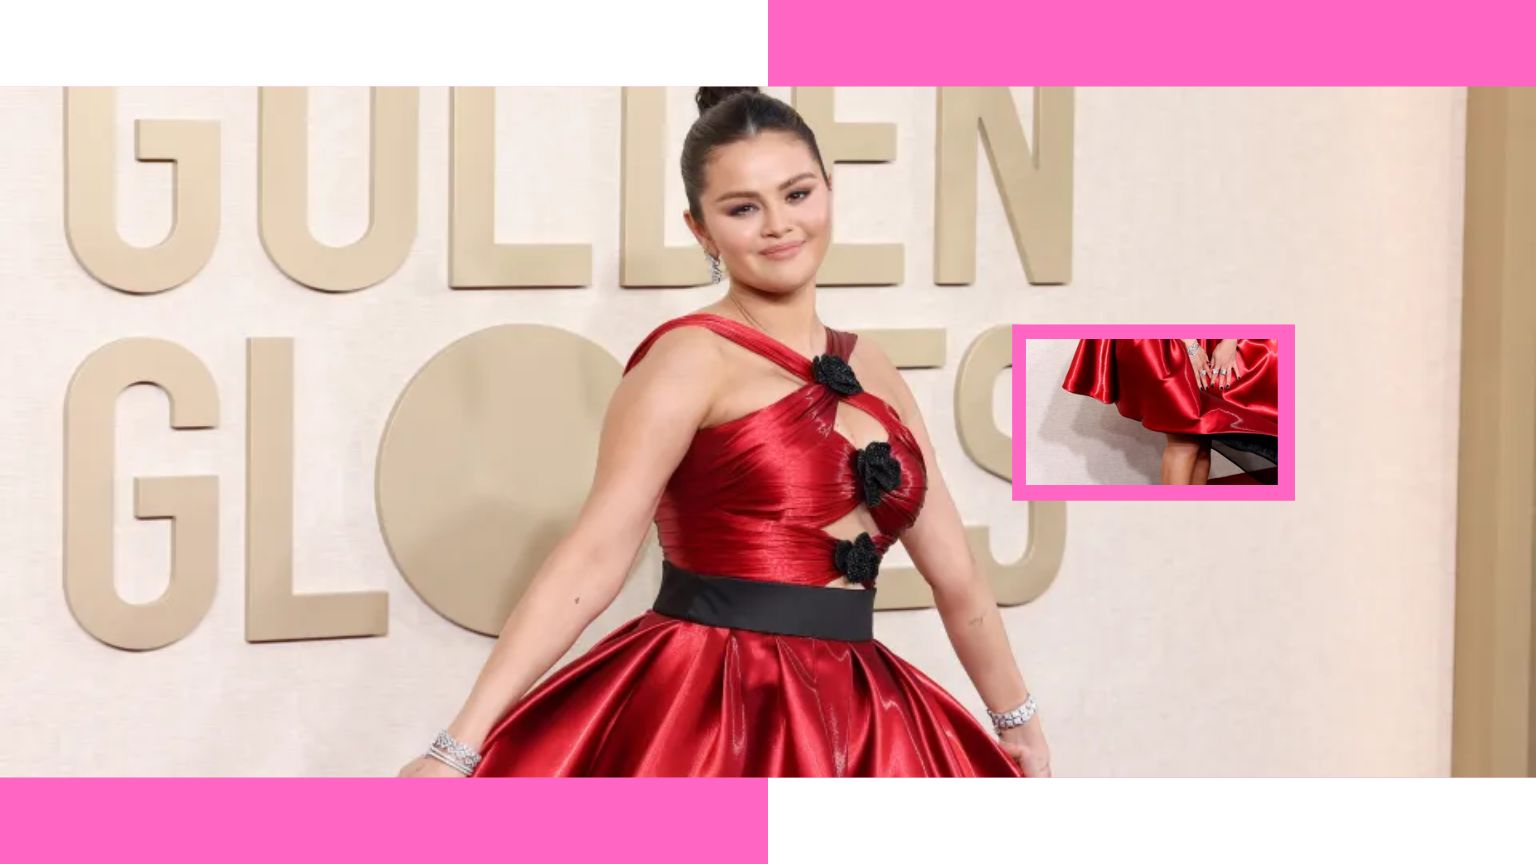 Selena Gomez major 'wardrobe malfunction' on Golden Globes red carpet but avoided 'NSFW' moment